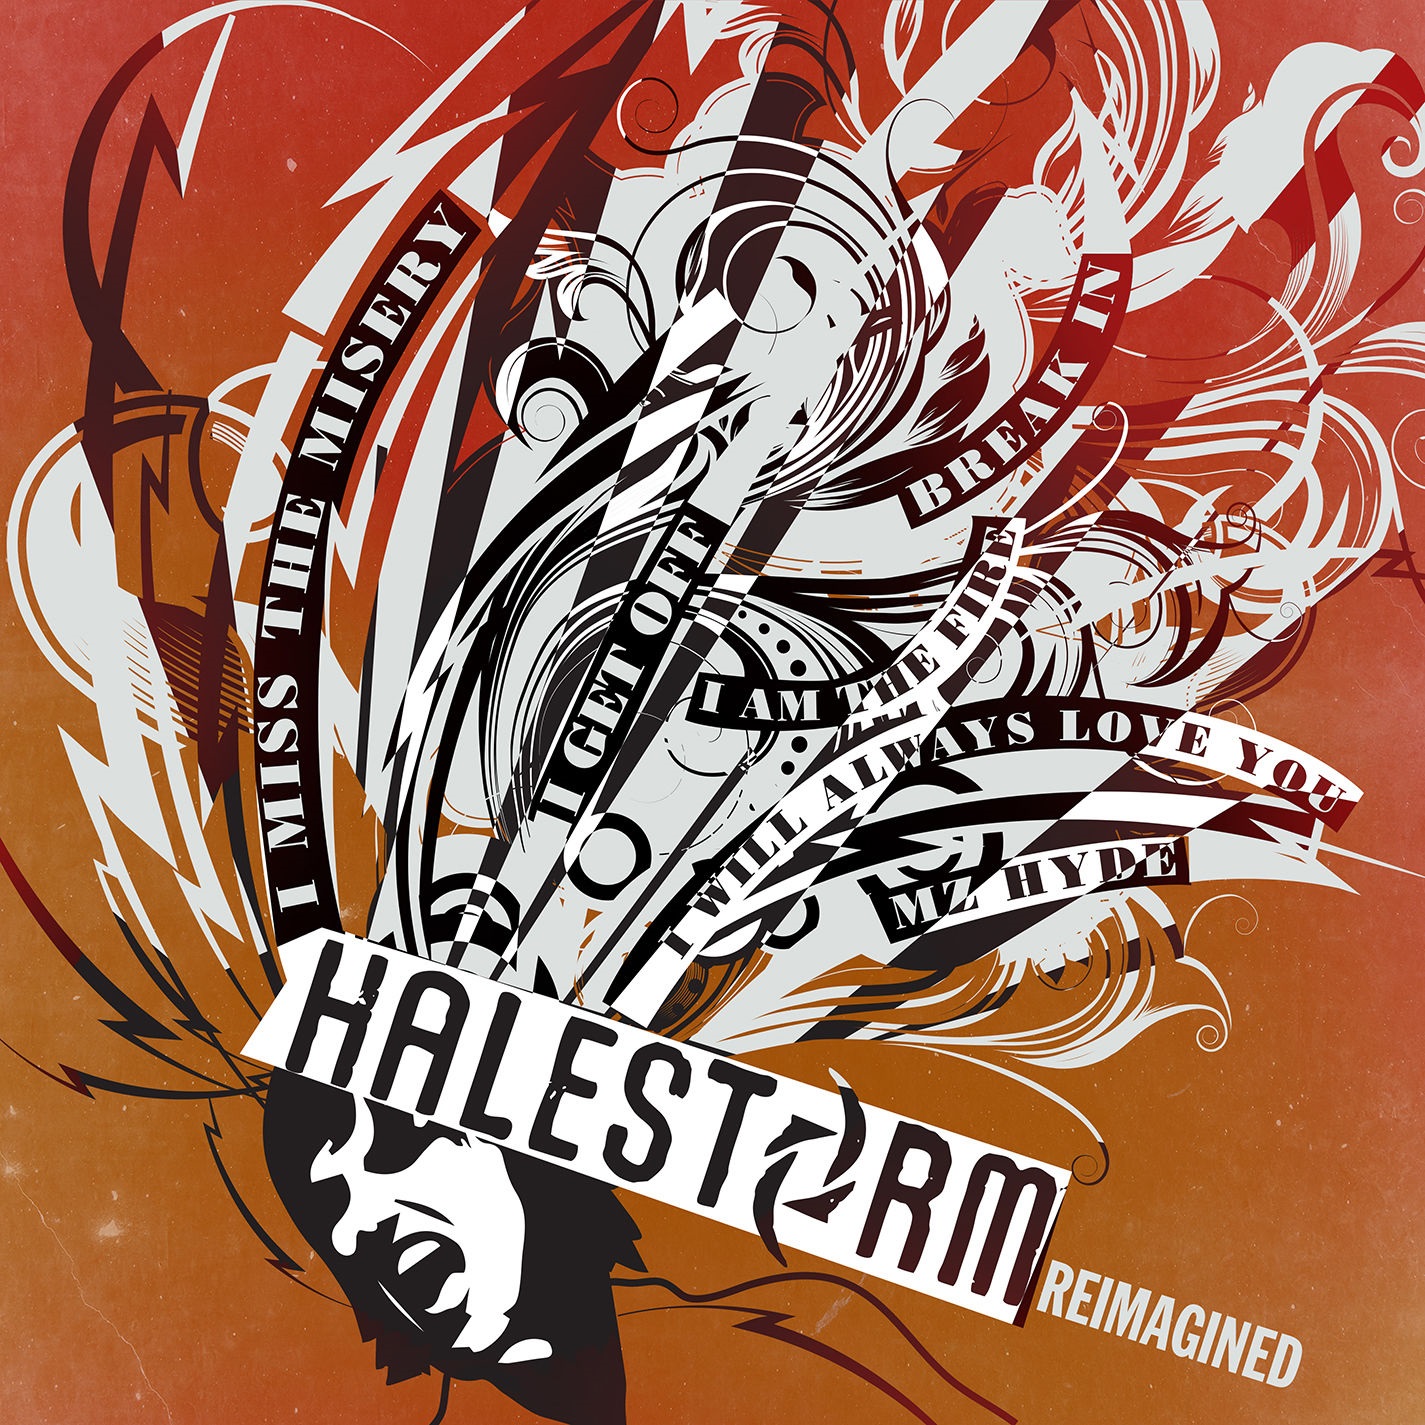 Halestorm - Reimagined (EP) (2020) [FLAC 24bit/96kHz]